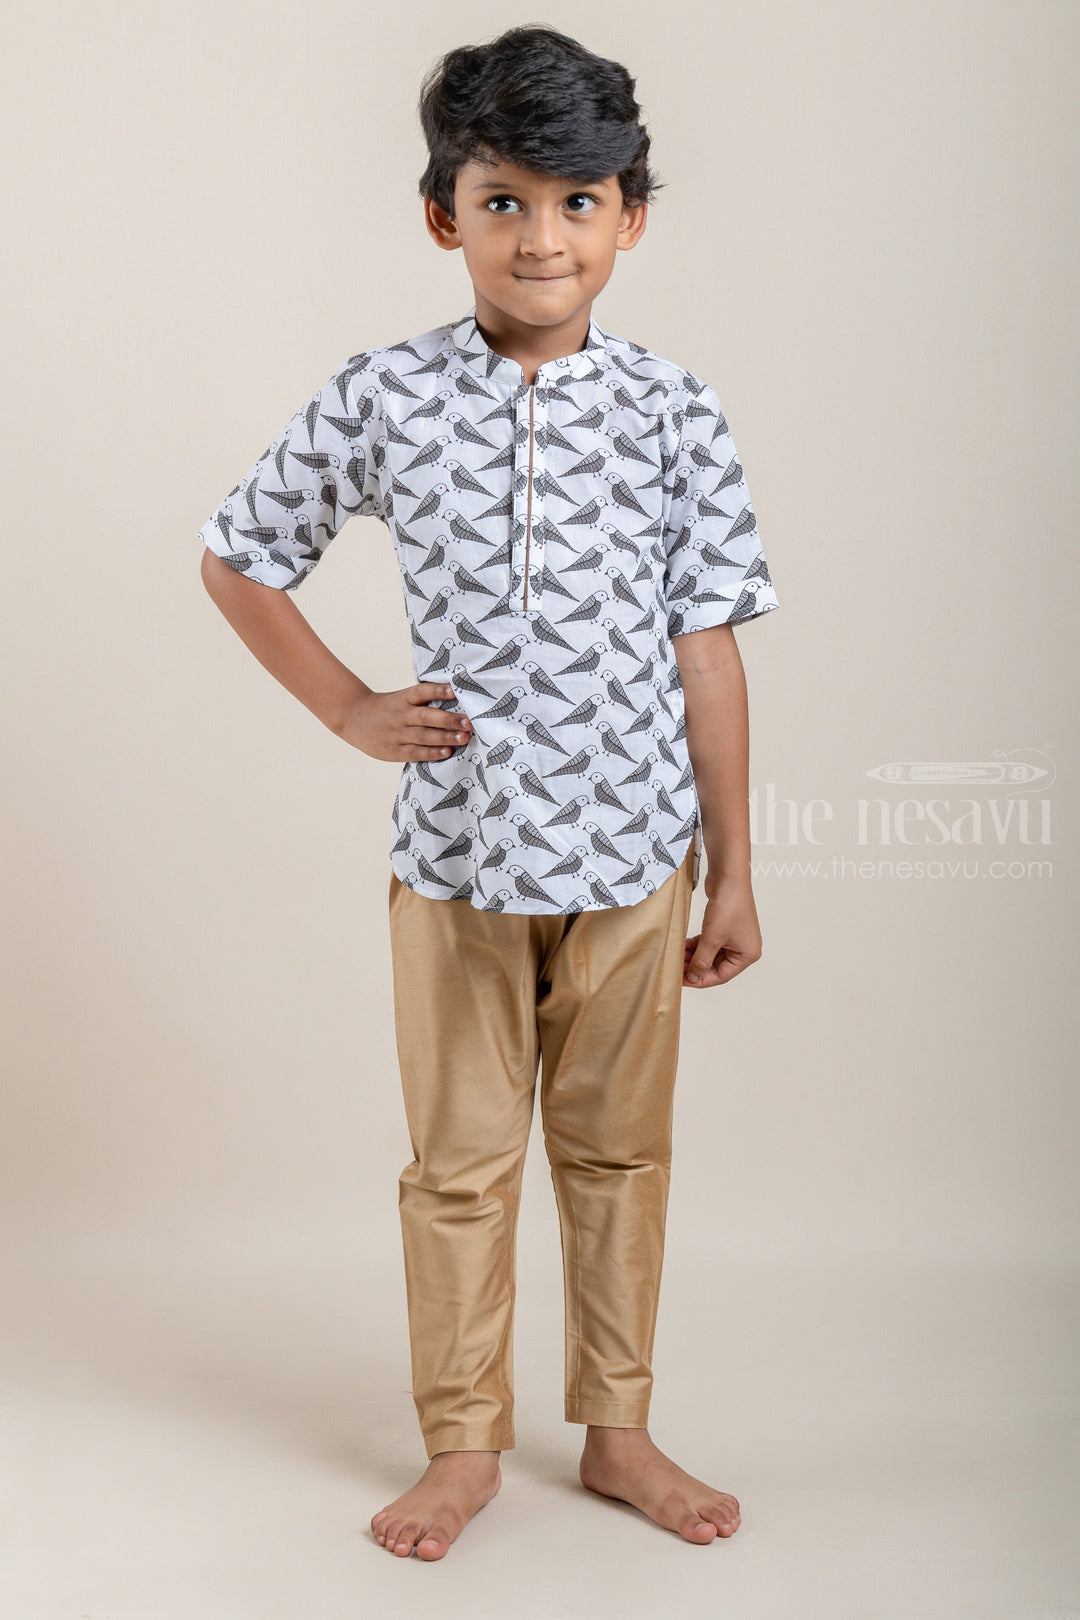 The Nesavu Boys Kurtha Shirt Parrot All Over Printed White Cotton Shirt For Boys Nesavu 12 (3M) / White / Cotton BS017 Premium Boys Shirts | latest cotton Shirts | The Nesavu